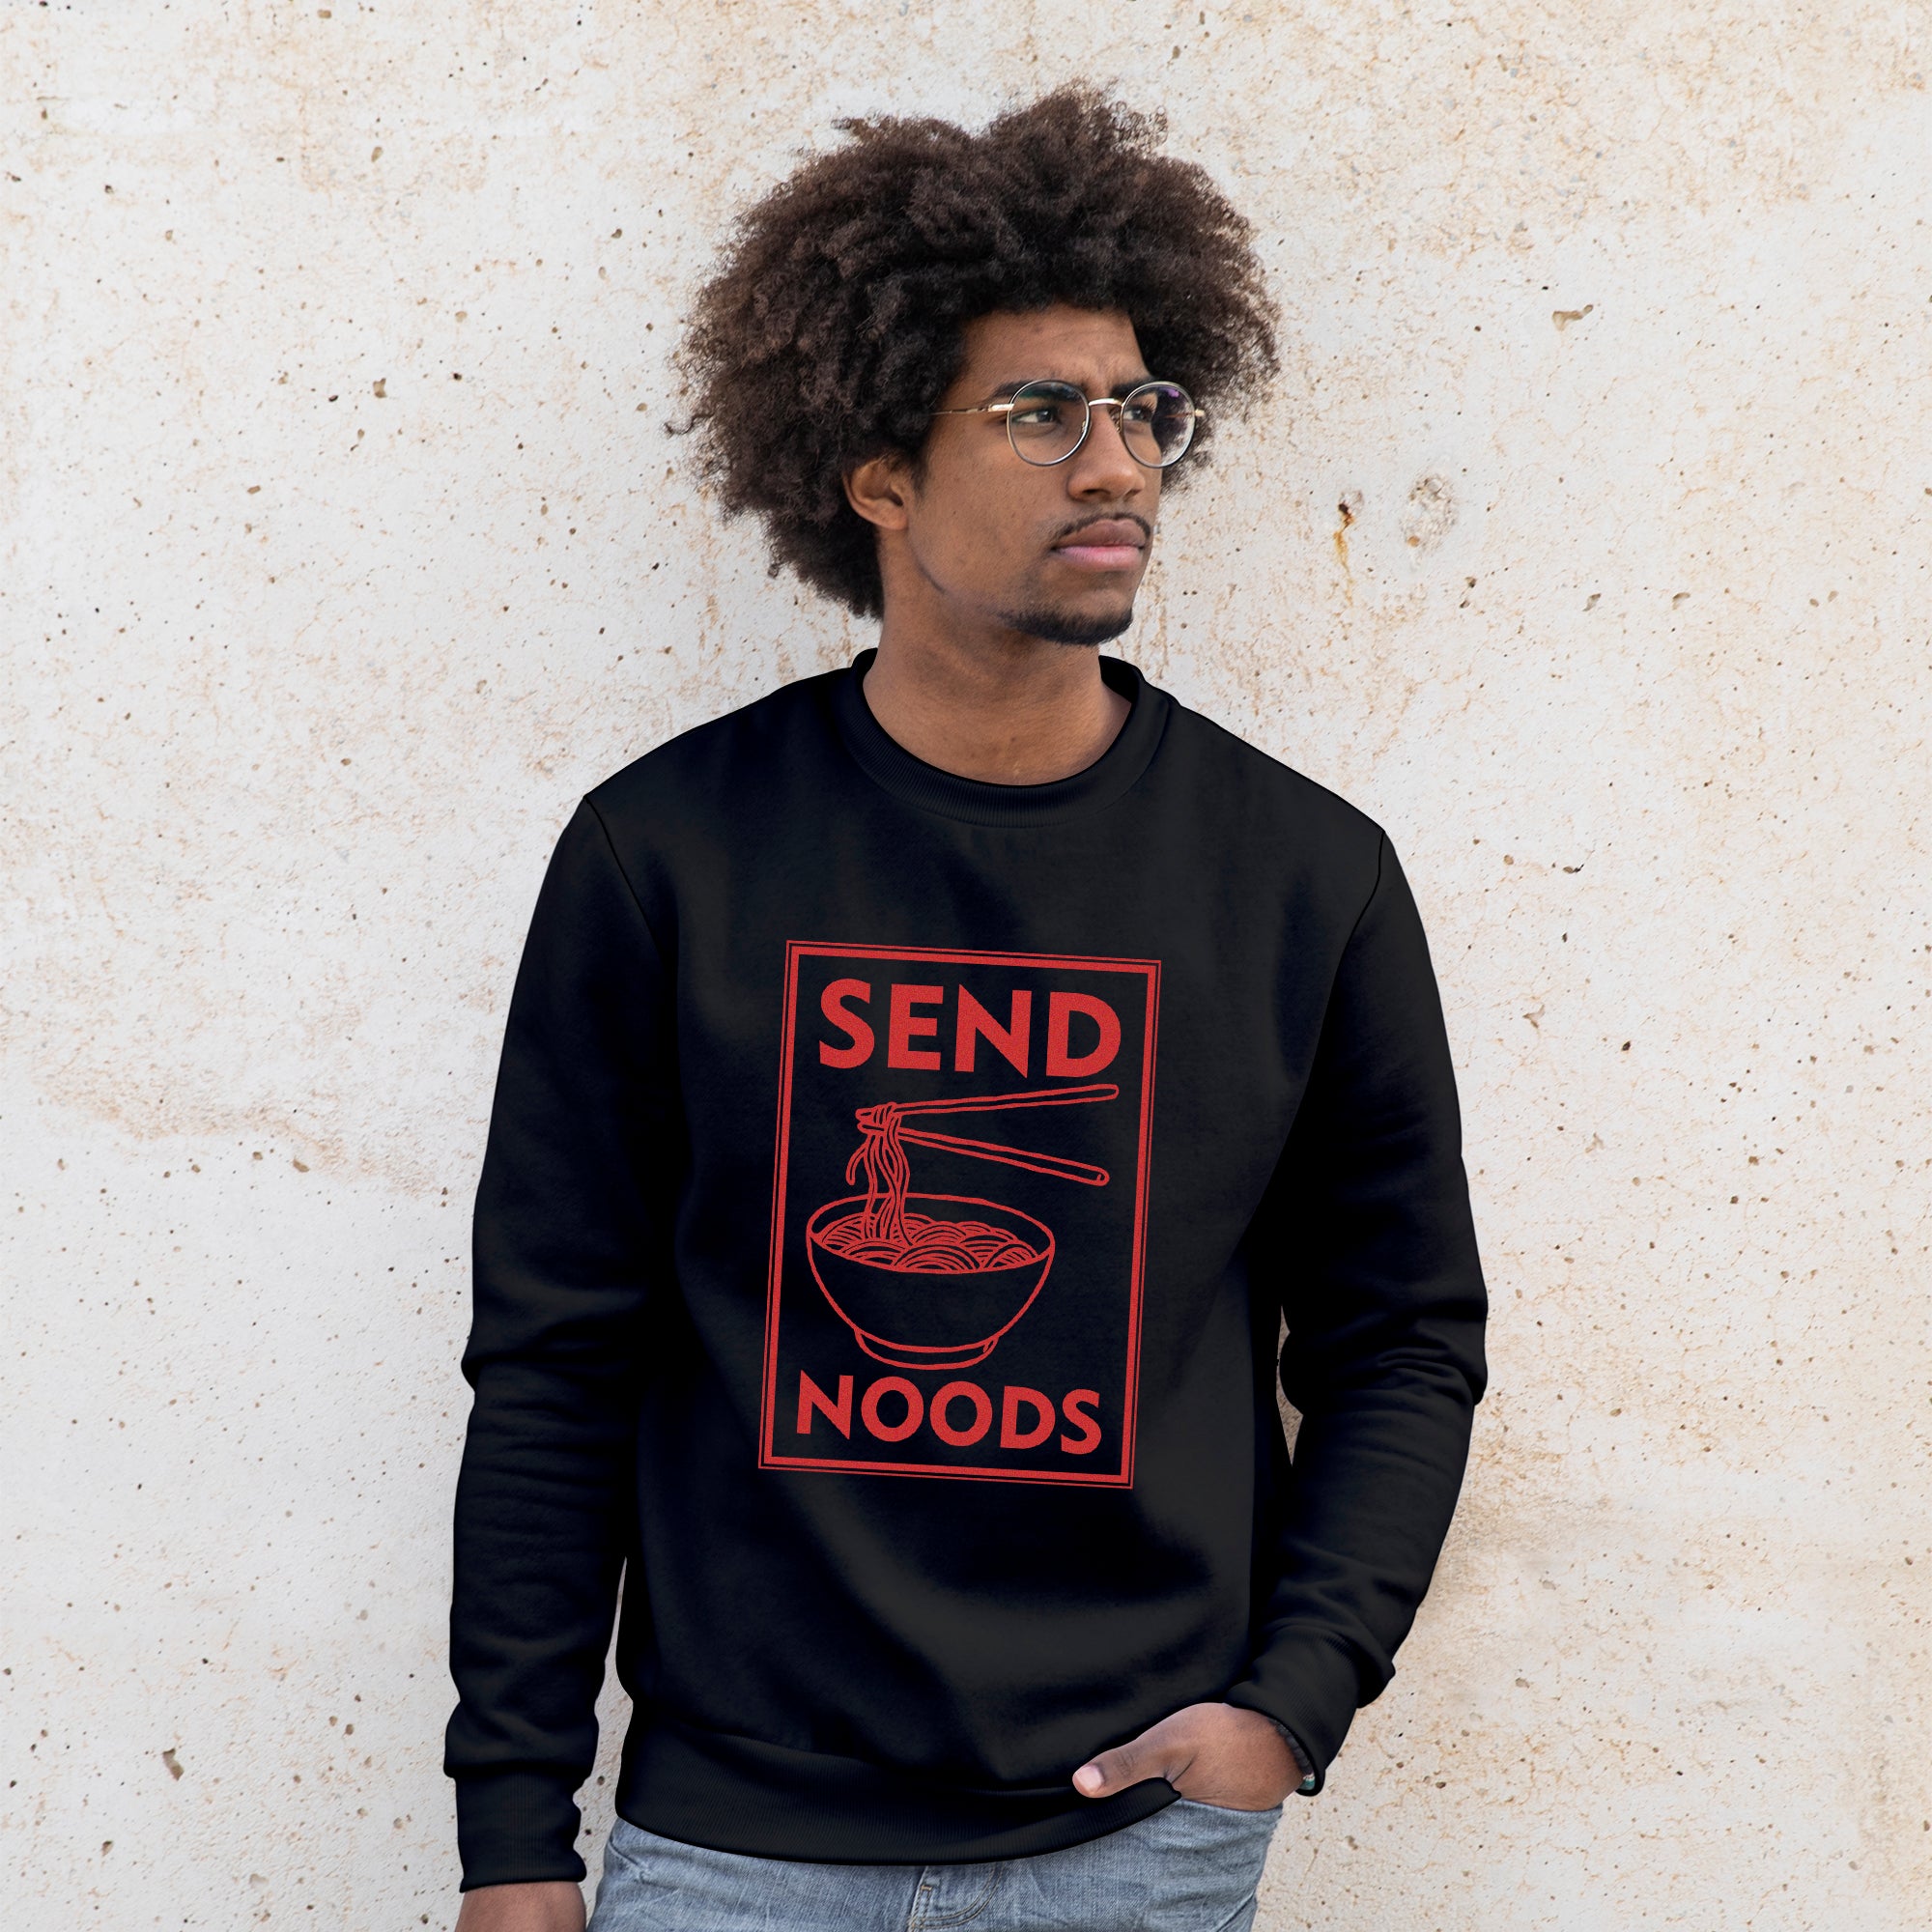 'Send Noods' Sweatshirt